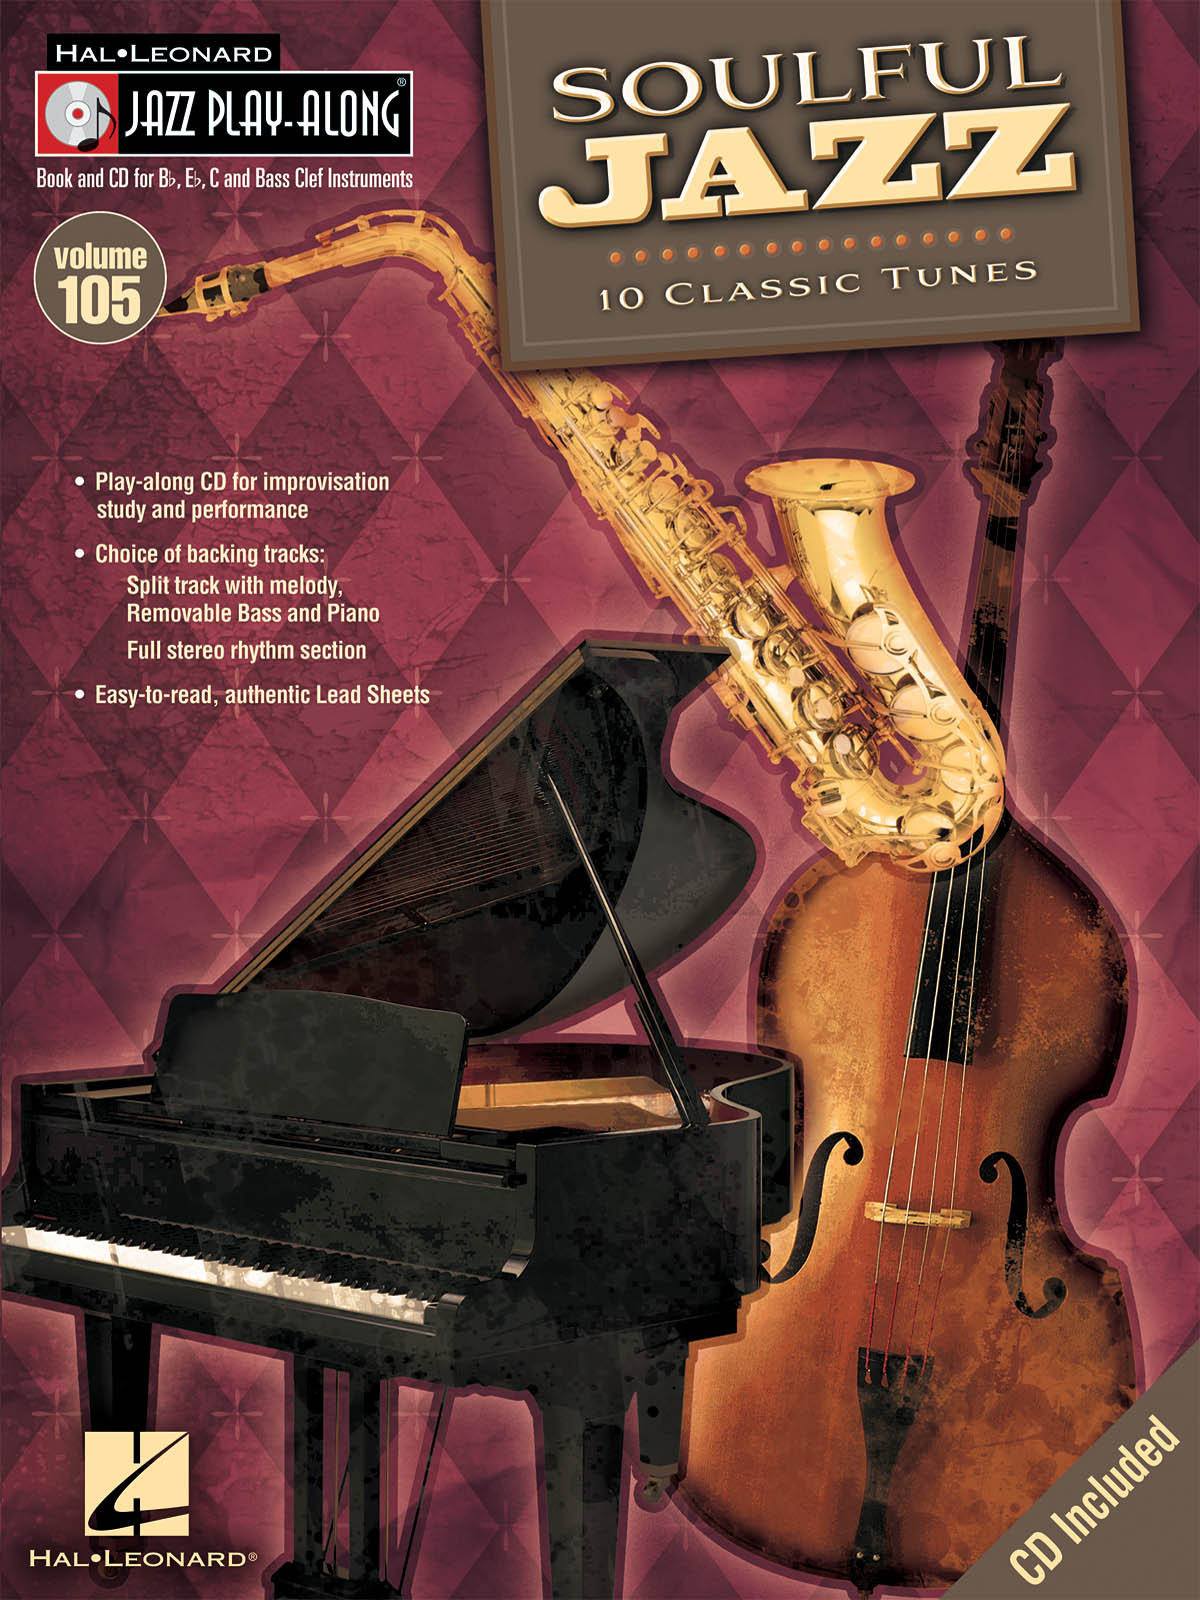 Soulful Jazz - Jazz Play-Along Volume 105 - melodie s akordy pro nástroje v ladění C